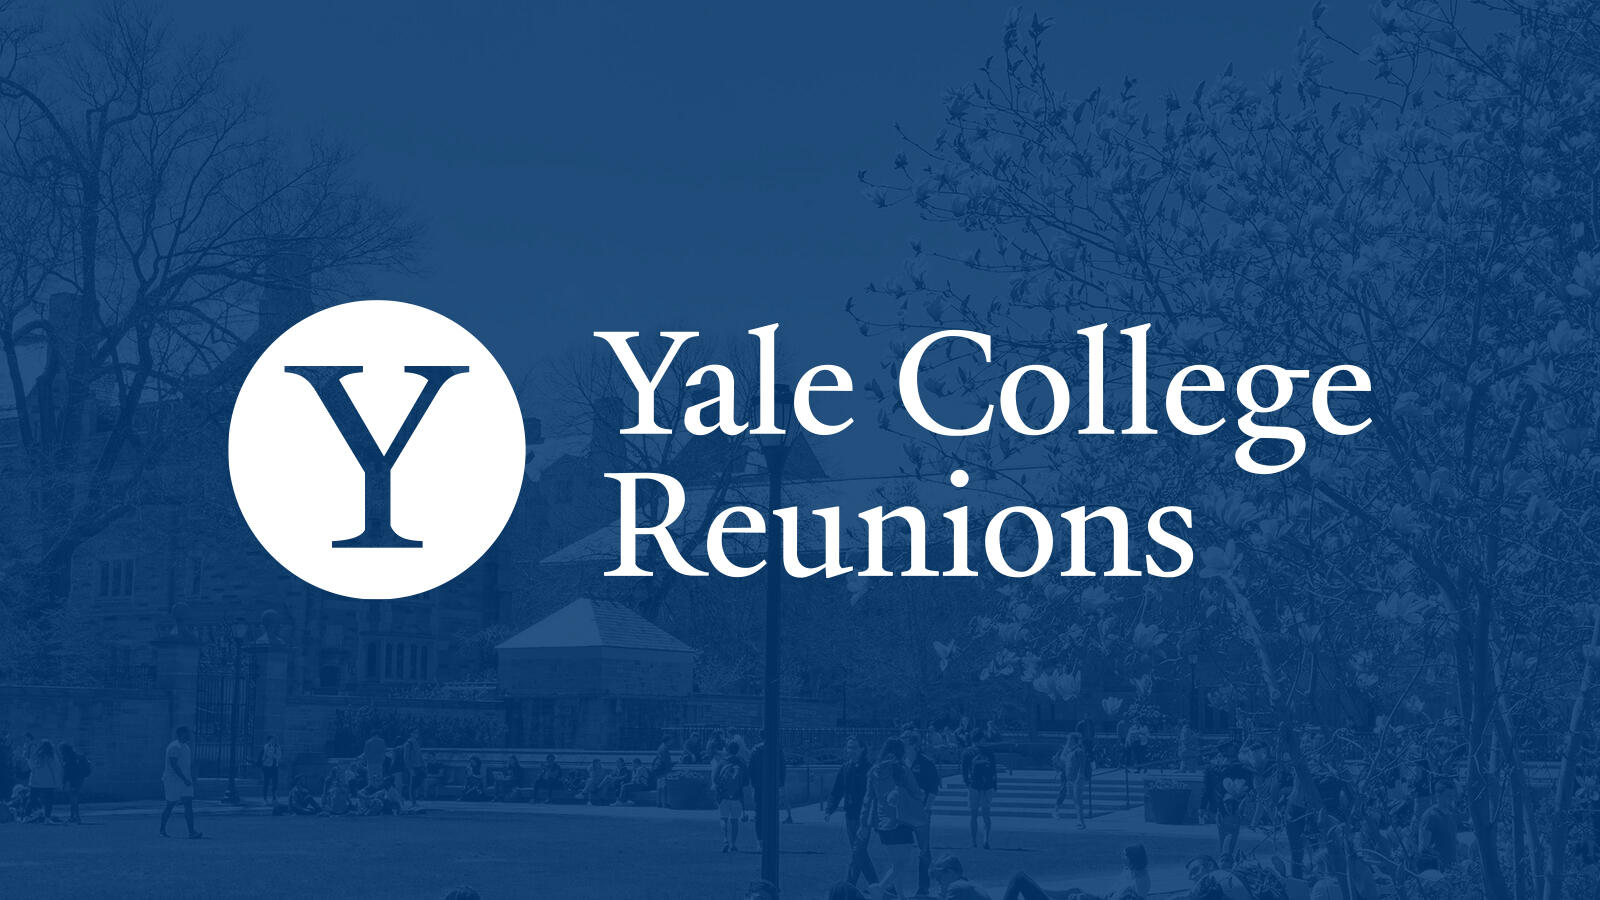 Yale College Reunions go digital for 2021 Yale Alumni Association